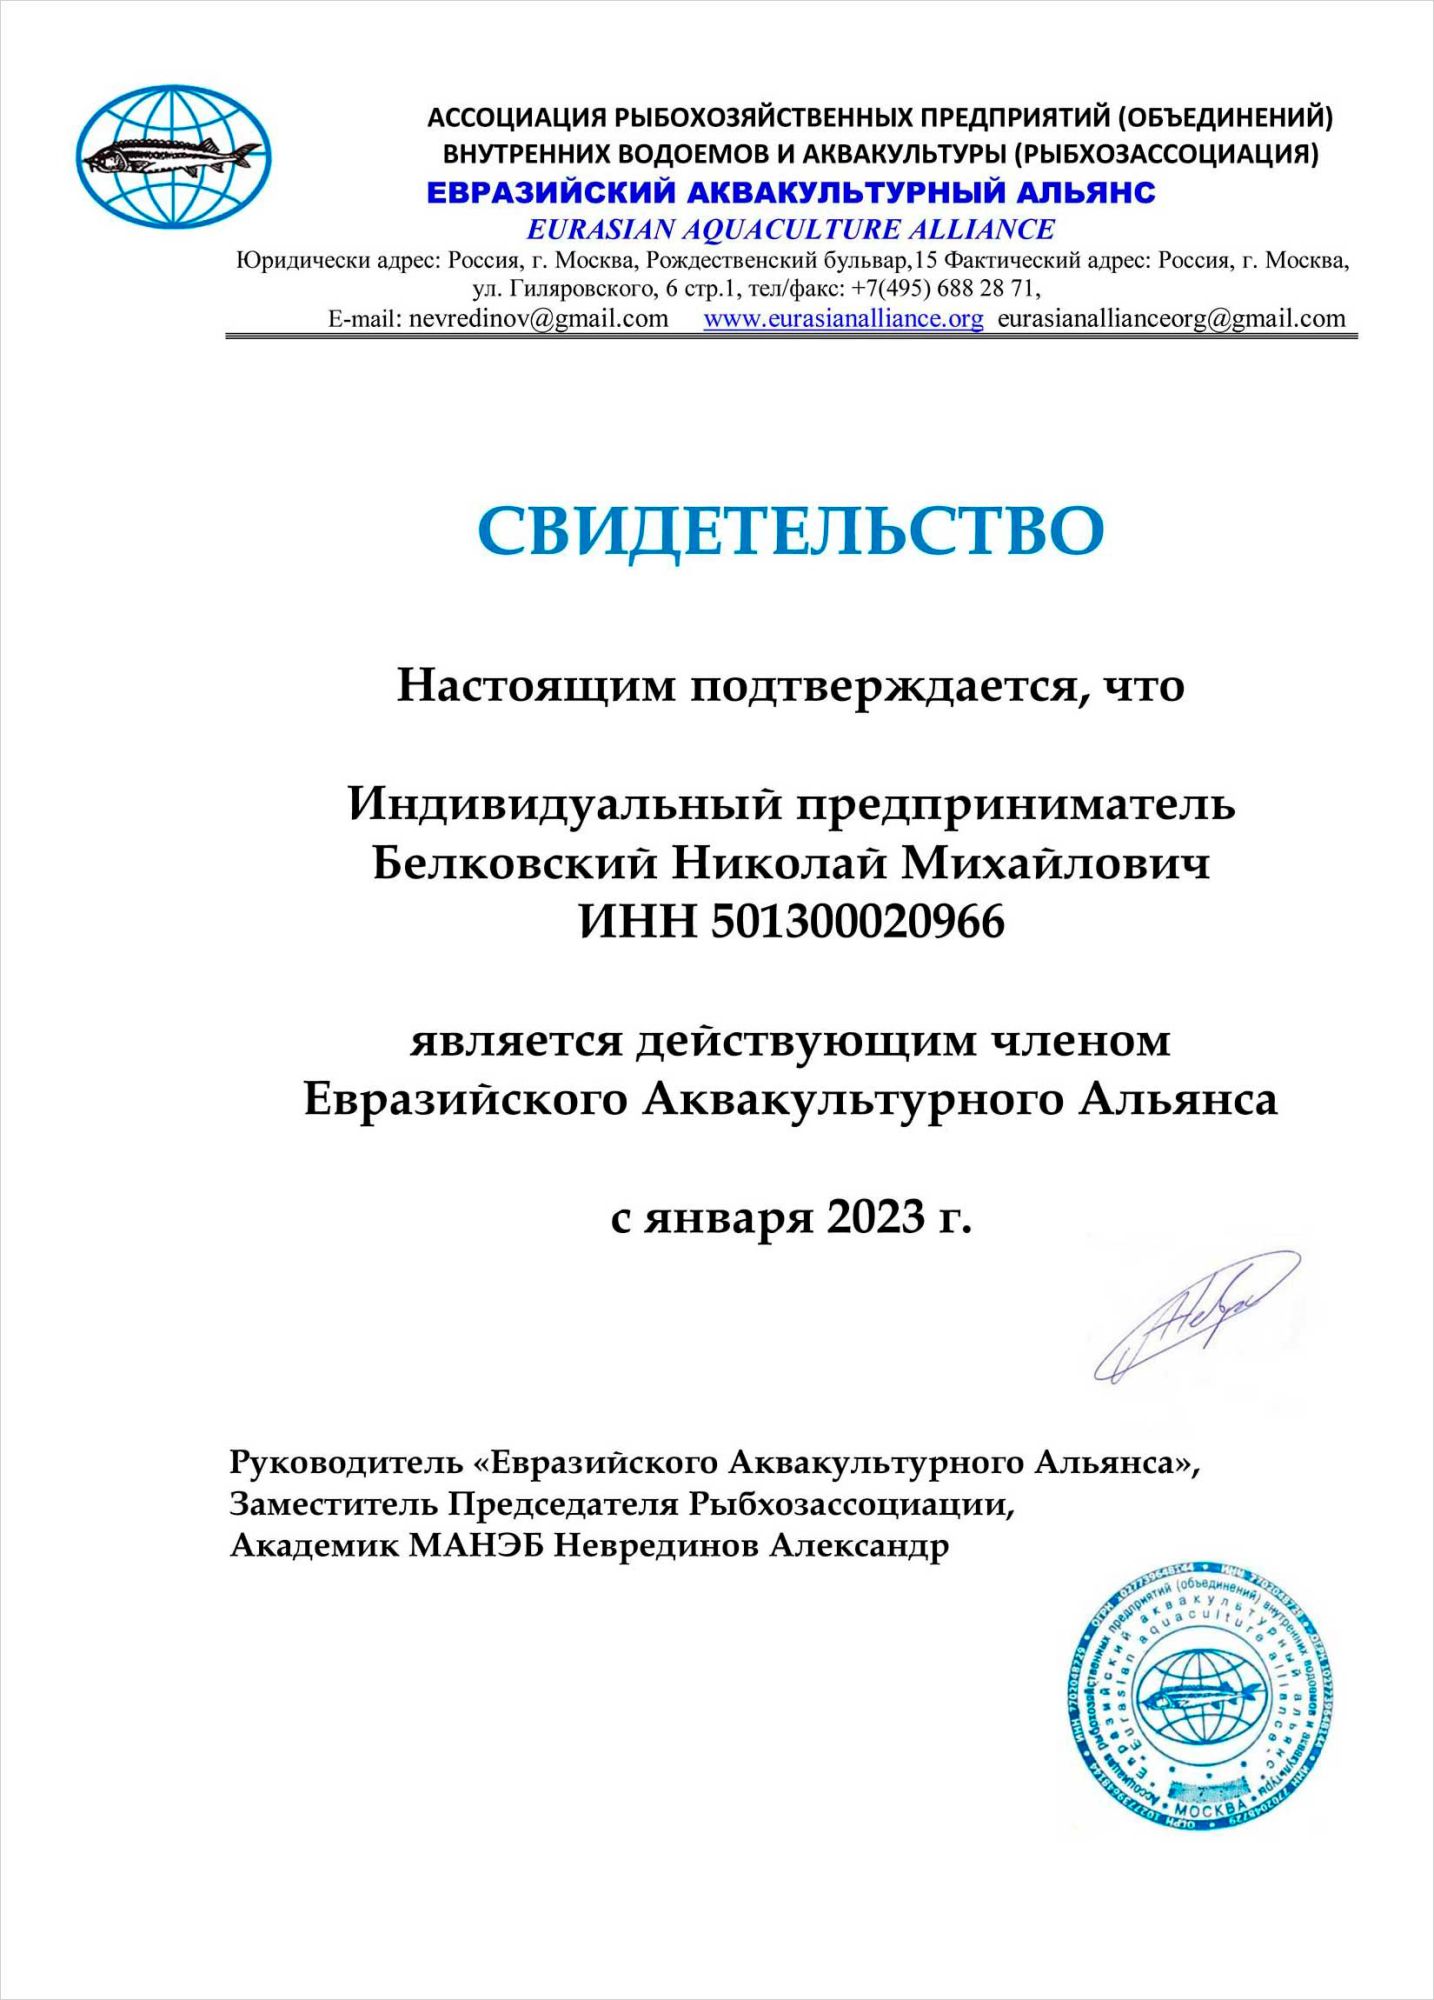 В январе 2023 года компания SALMORU™ стала членом Евразийского Аквакультурного Альянса